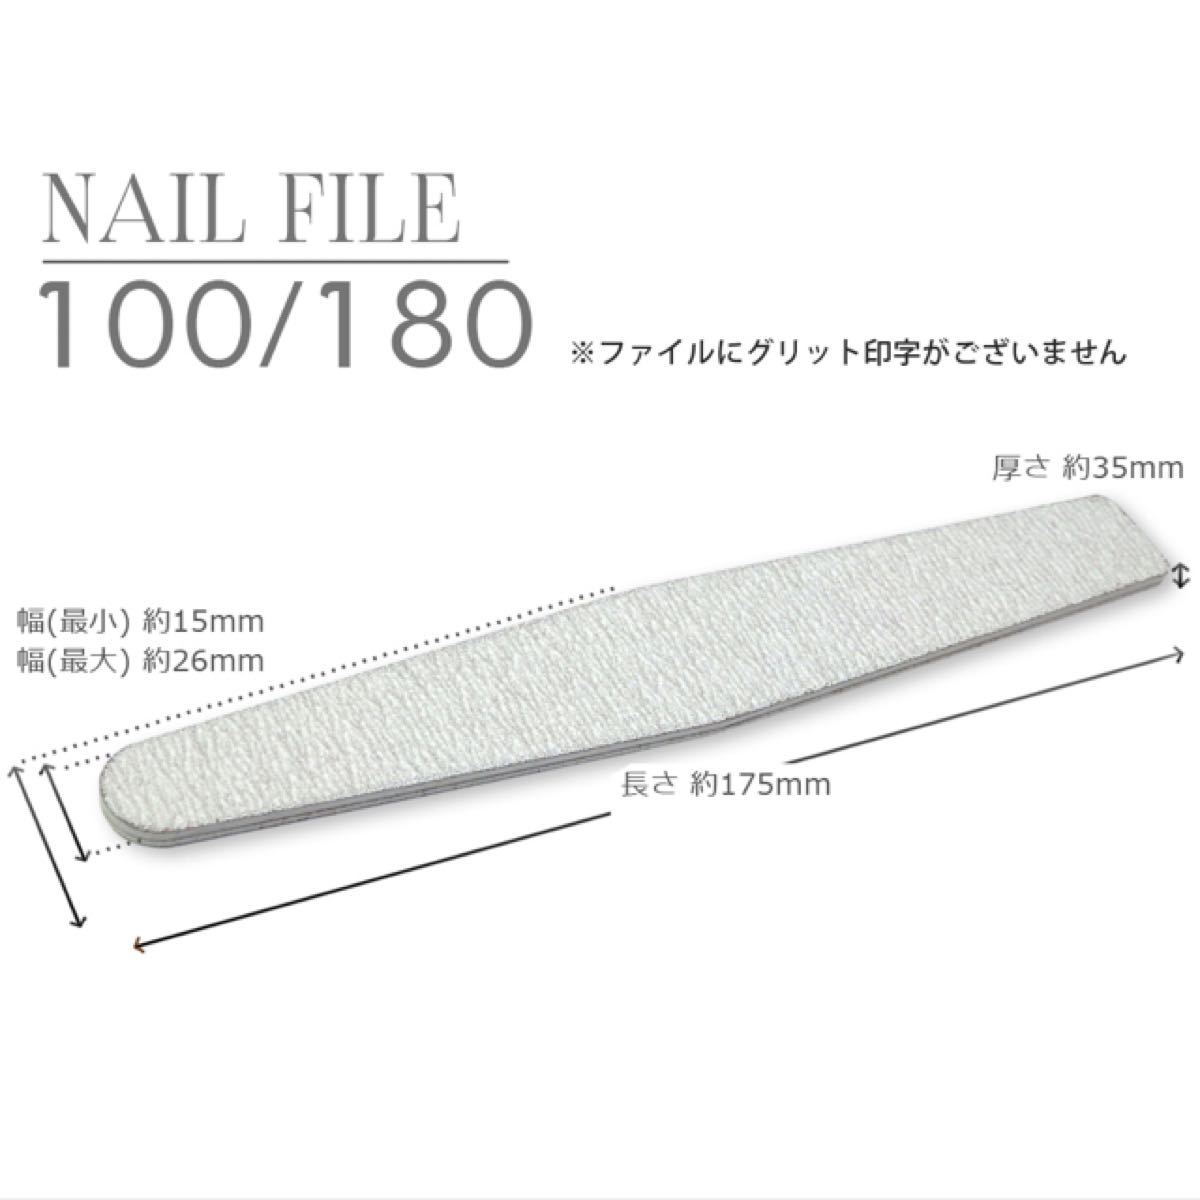 ネイルファイル 10本 100 180 ファイル ネイル ジェル レジン ジェルネイル 爪 爪手入れ 使い捨て  ダイアモンド型